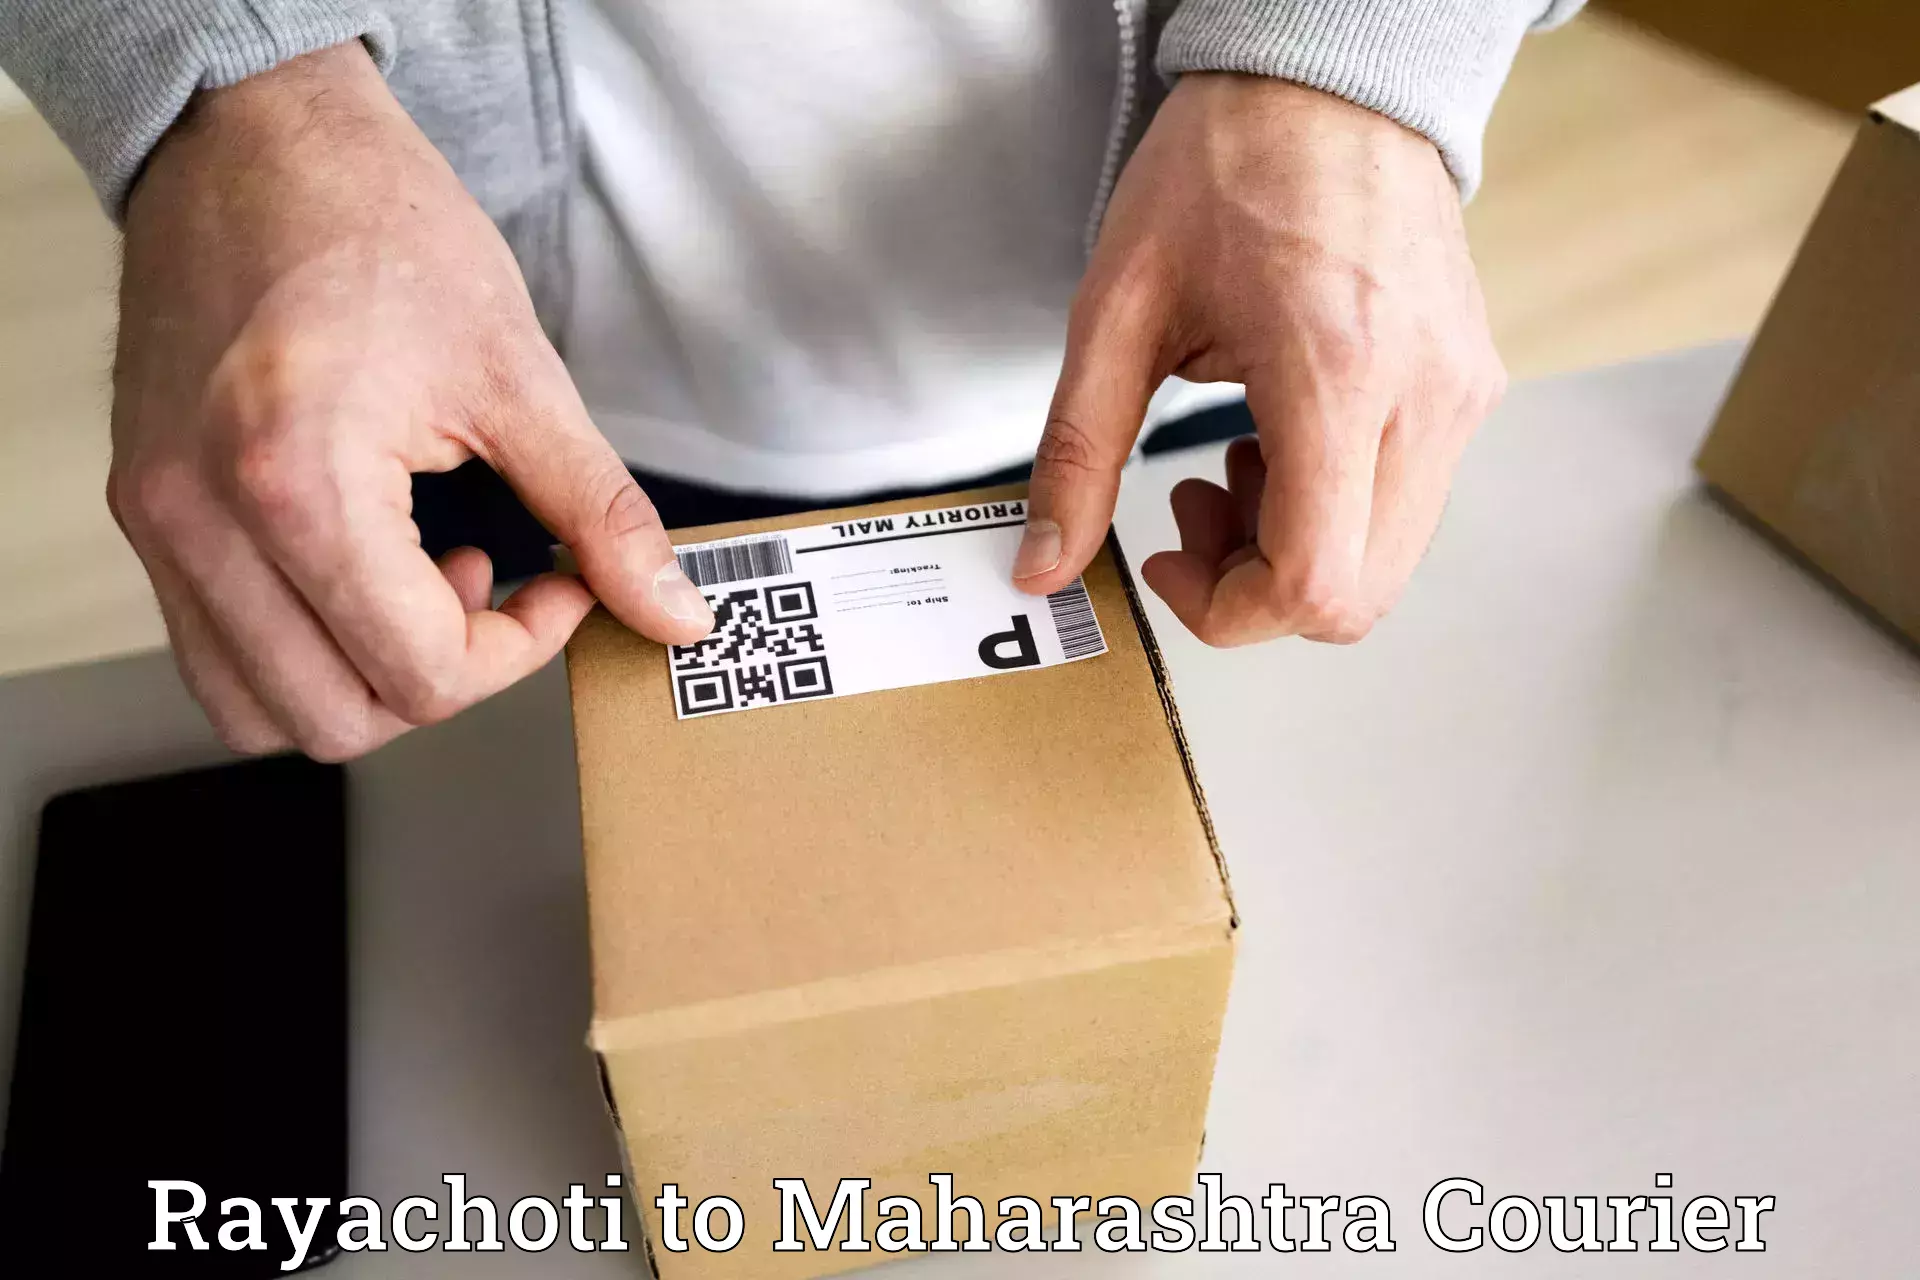 Nationwide parcel services Rayachoti to Akkalkot